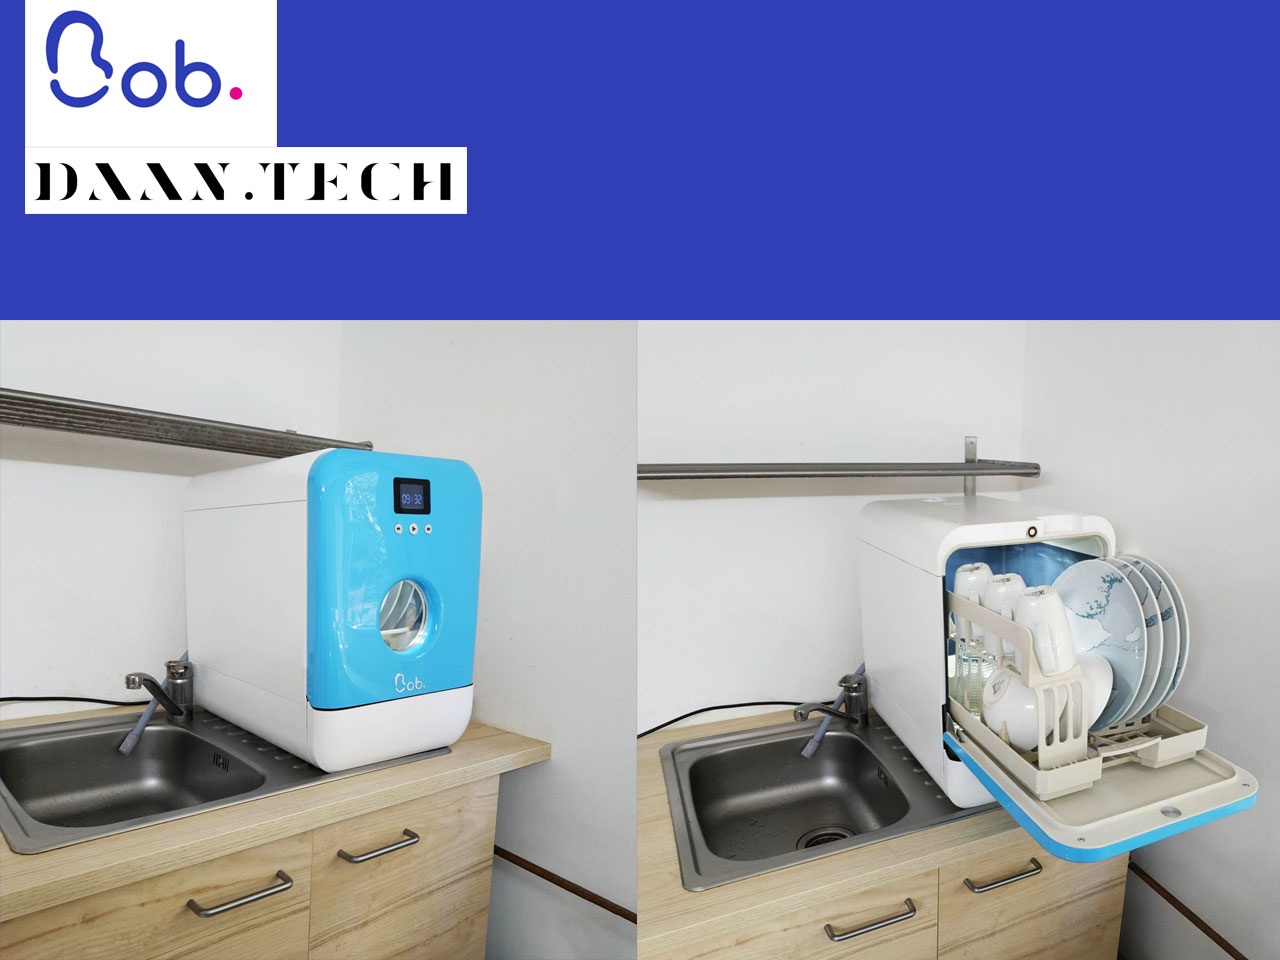 Daan Tech Lave-vaisselle de table Bob Blanc/Bleu